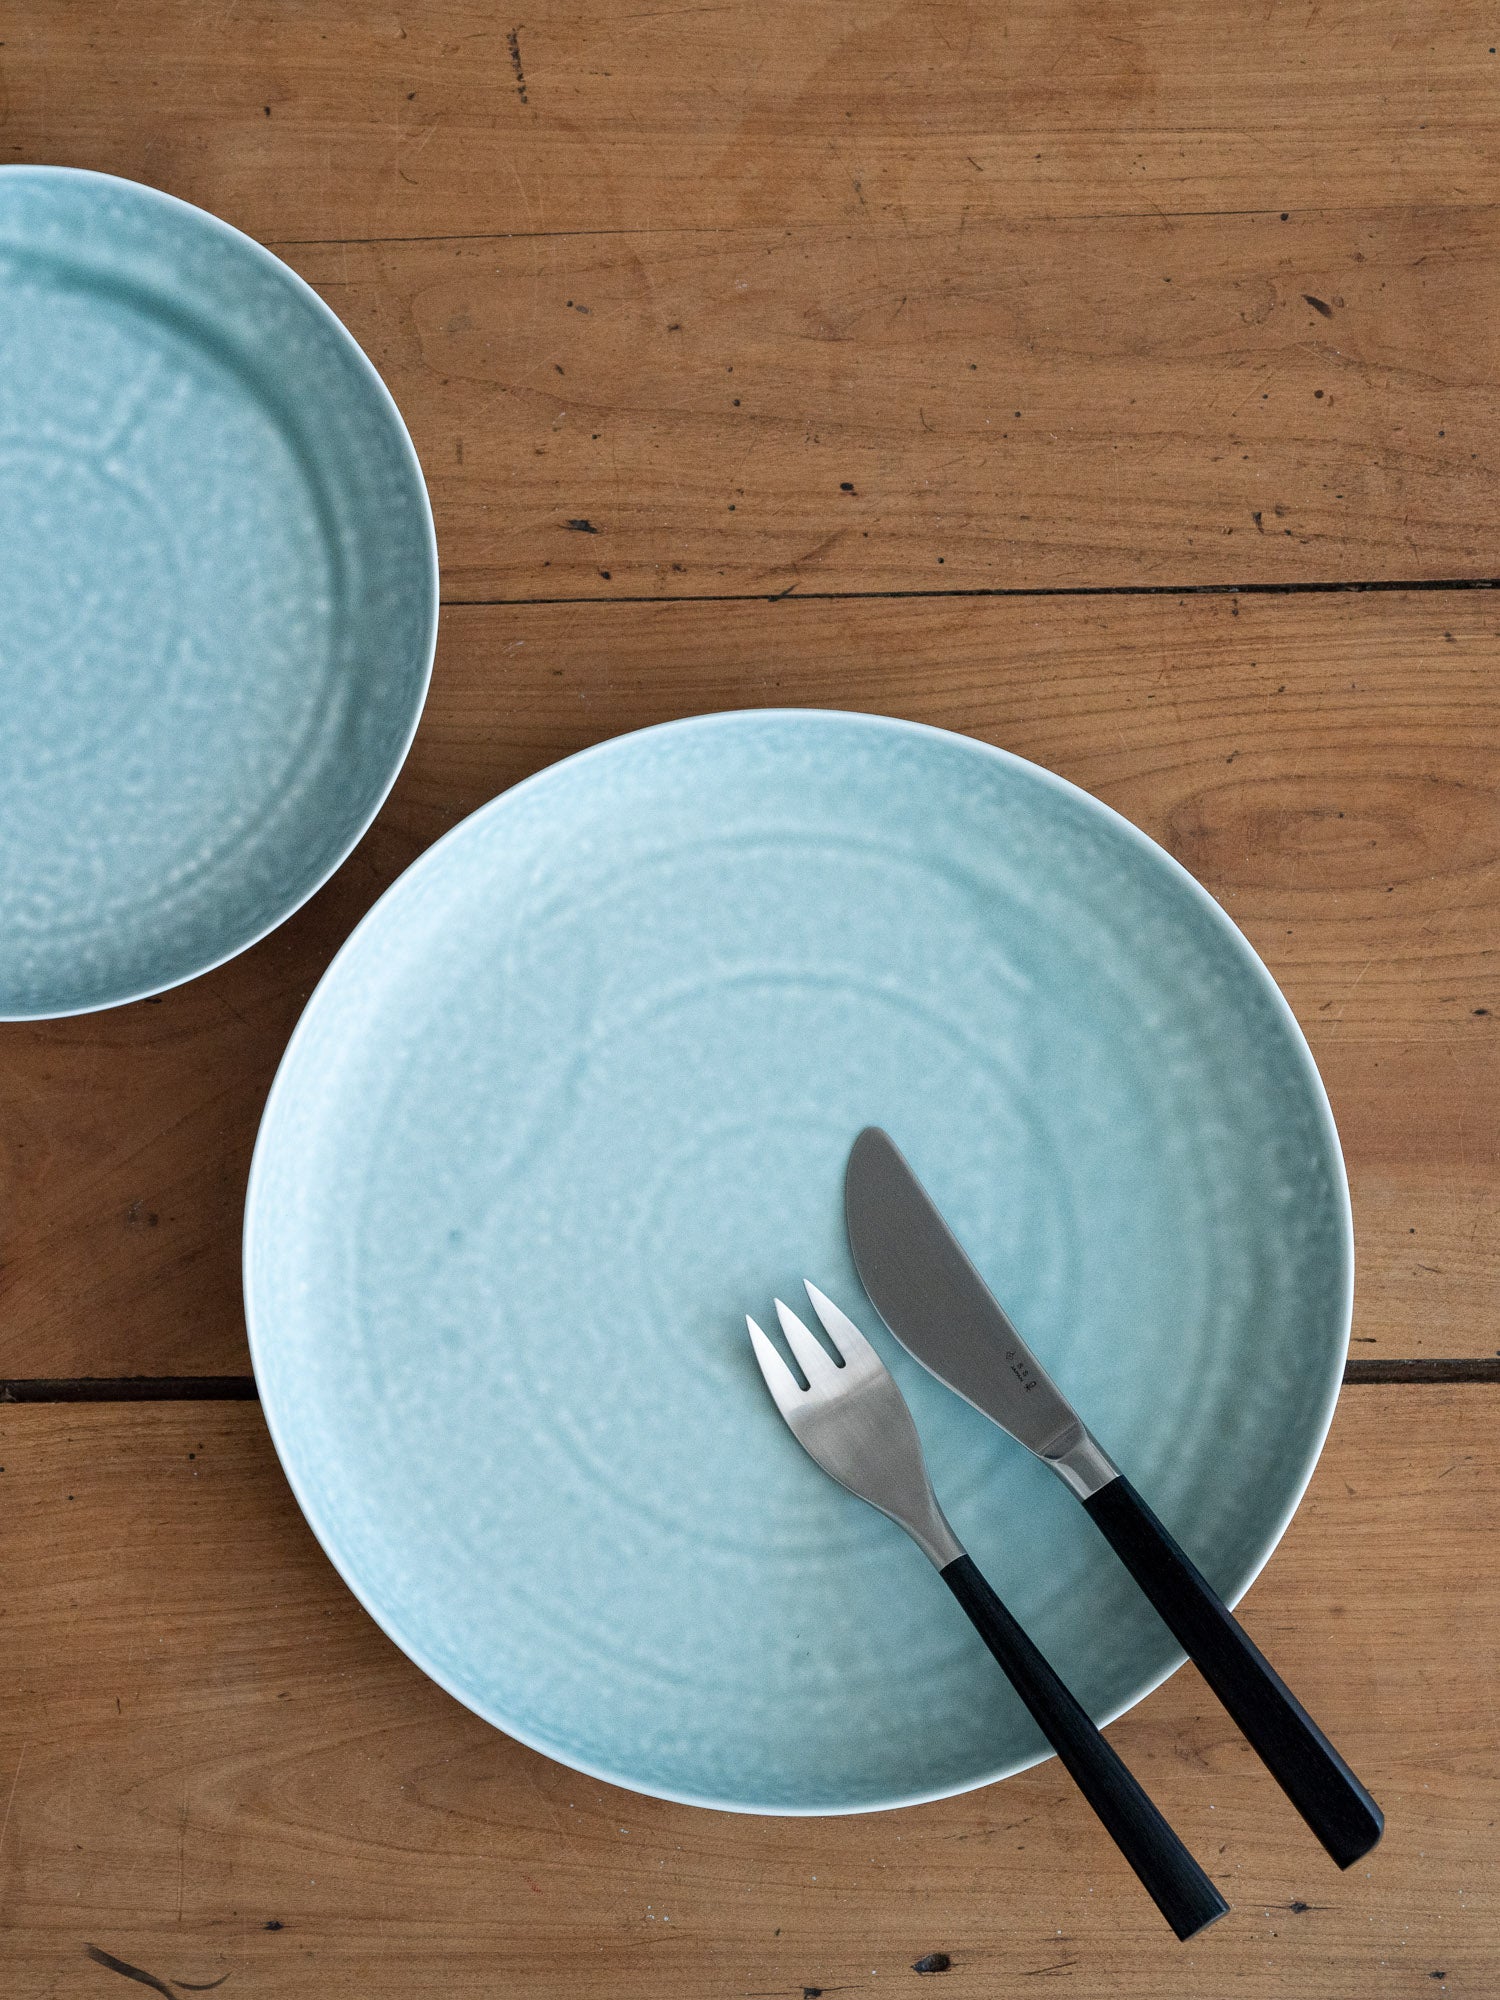 ReIRABO Dinner Plate – Spring Mint Green